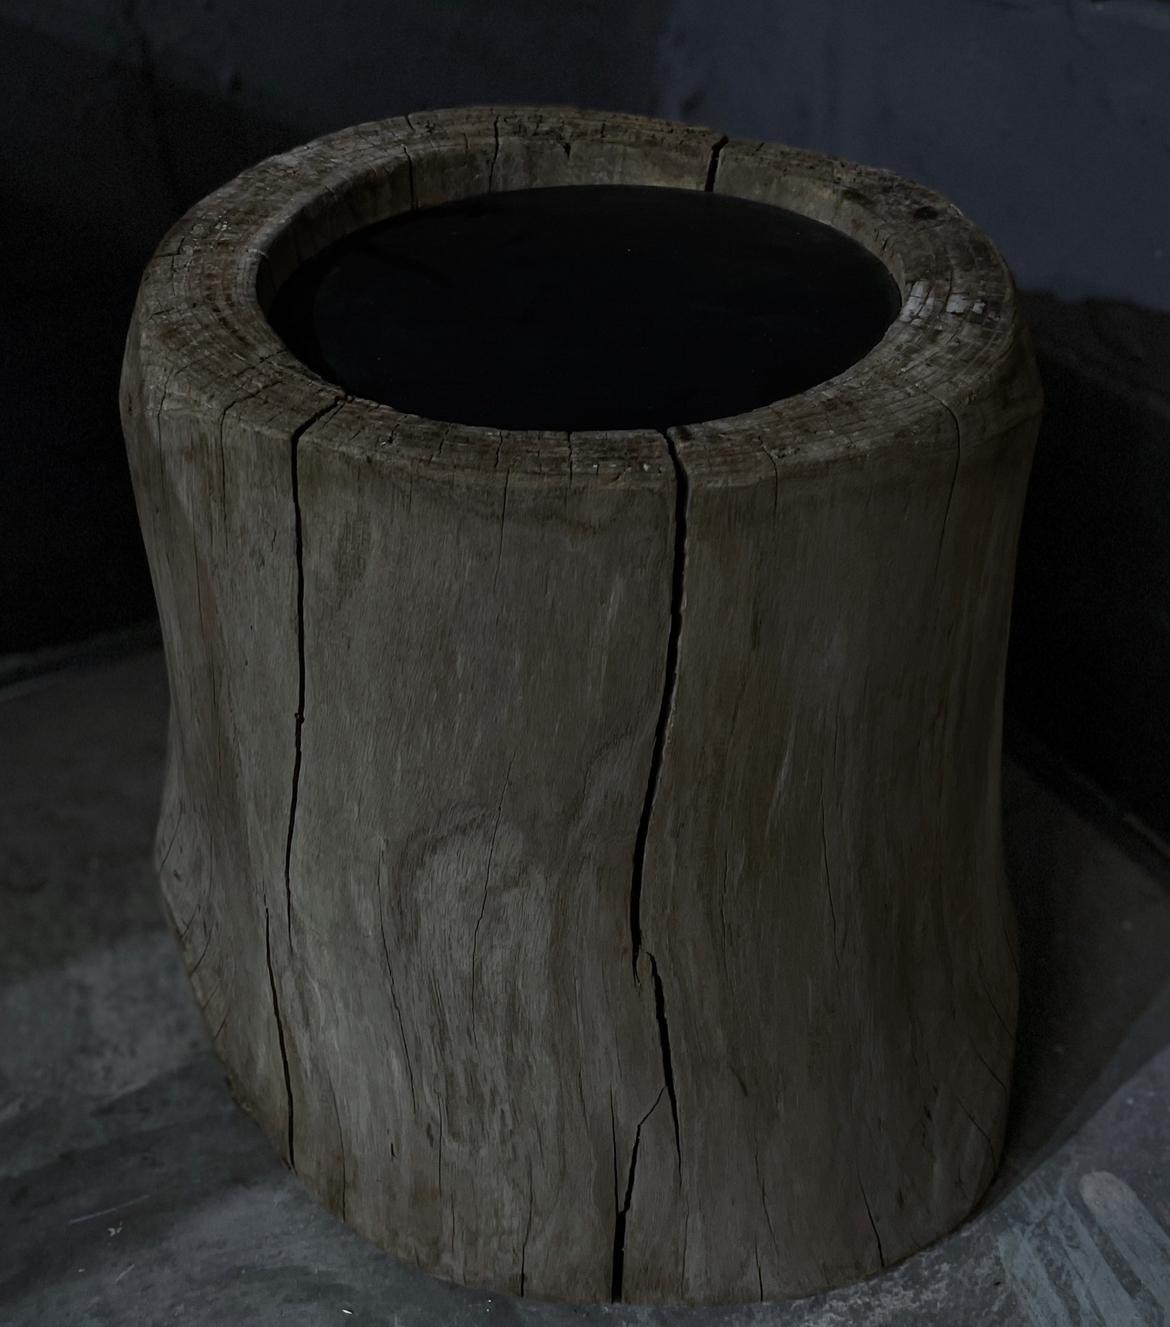 Dieser japanische Beistelltisch besteht aus einem antiken Sockel aus dem alten japanischen Zelkova-Holz Usu . Die natürliche Textur und die Patina verleihen diesem Stück ein Gefühl von Erde, wie man es sonst nur in der Natur finden kann. Abgerundet